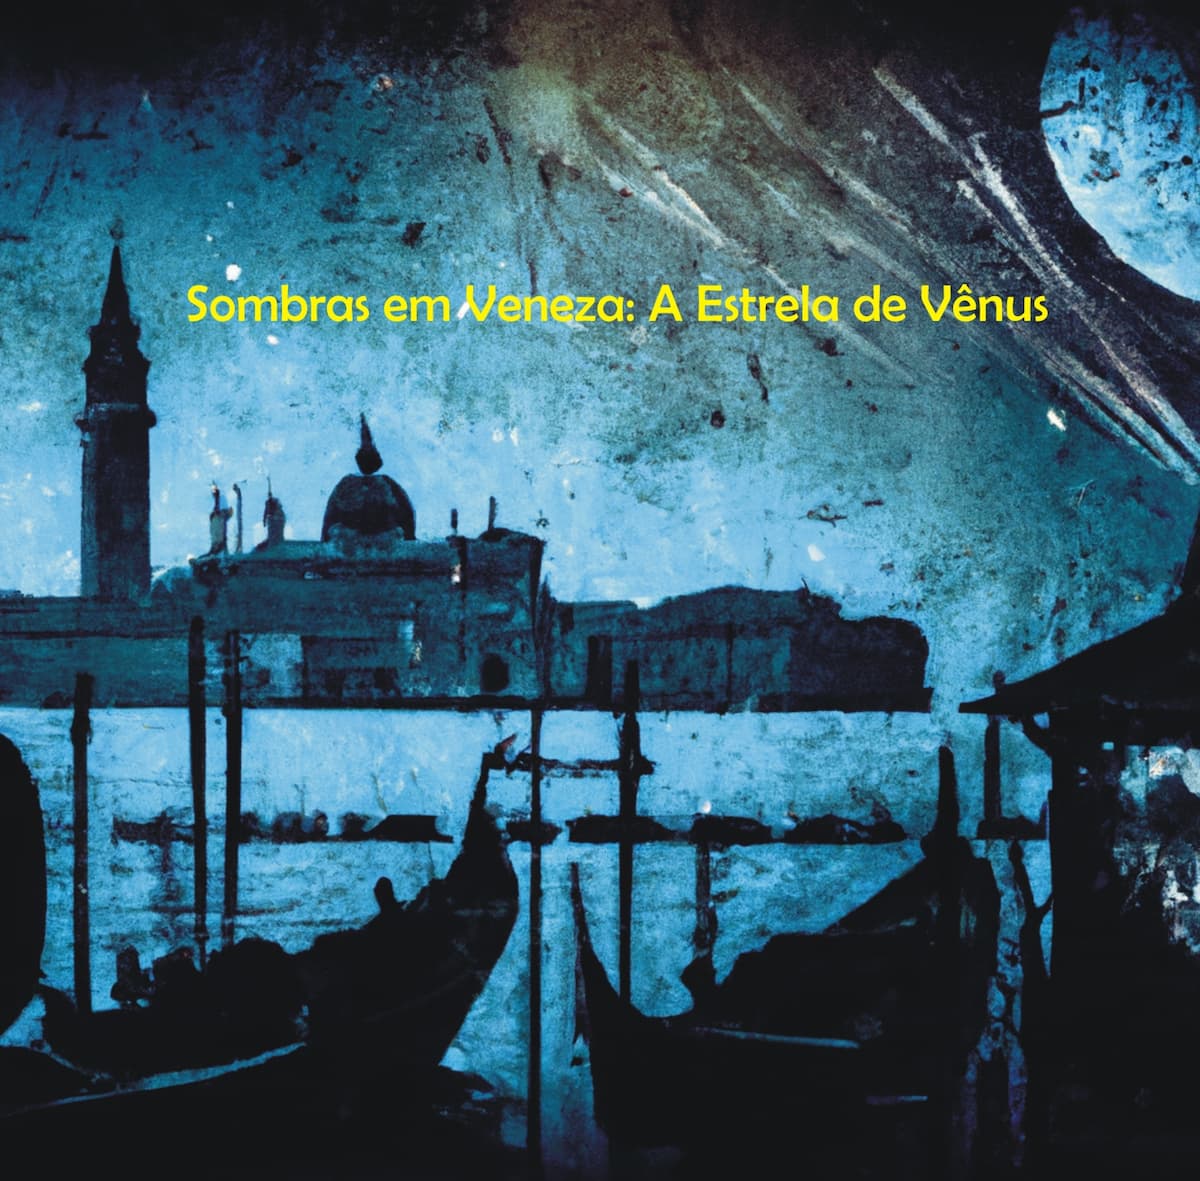 "Σκιές στη Βενετία": Το αστέρι της Αφροδίτης". Αυτή η εικόνα δημιουργήθηκε με τη βοήθεια του DALL·E 2.